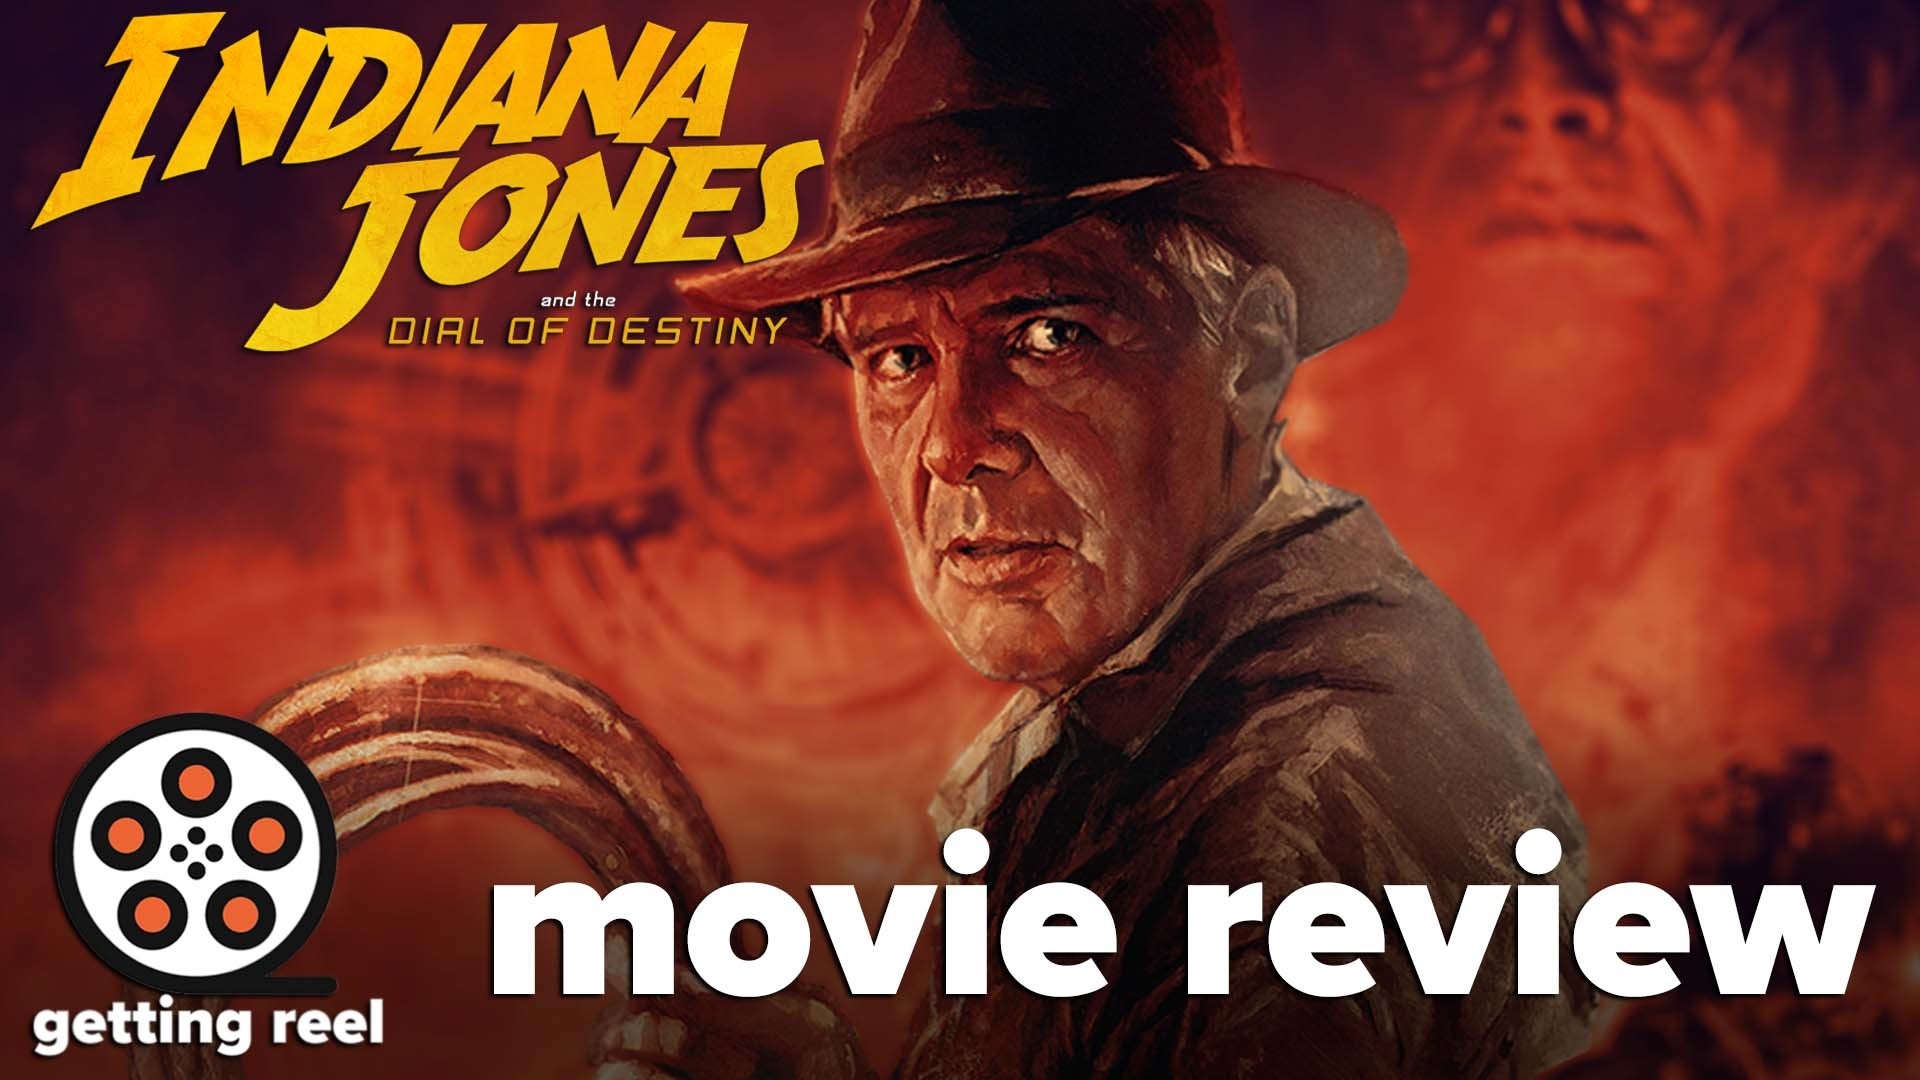 Karen Allen on the lasting legacy of 'Indiana Jones